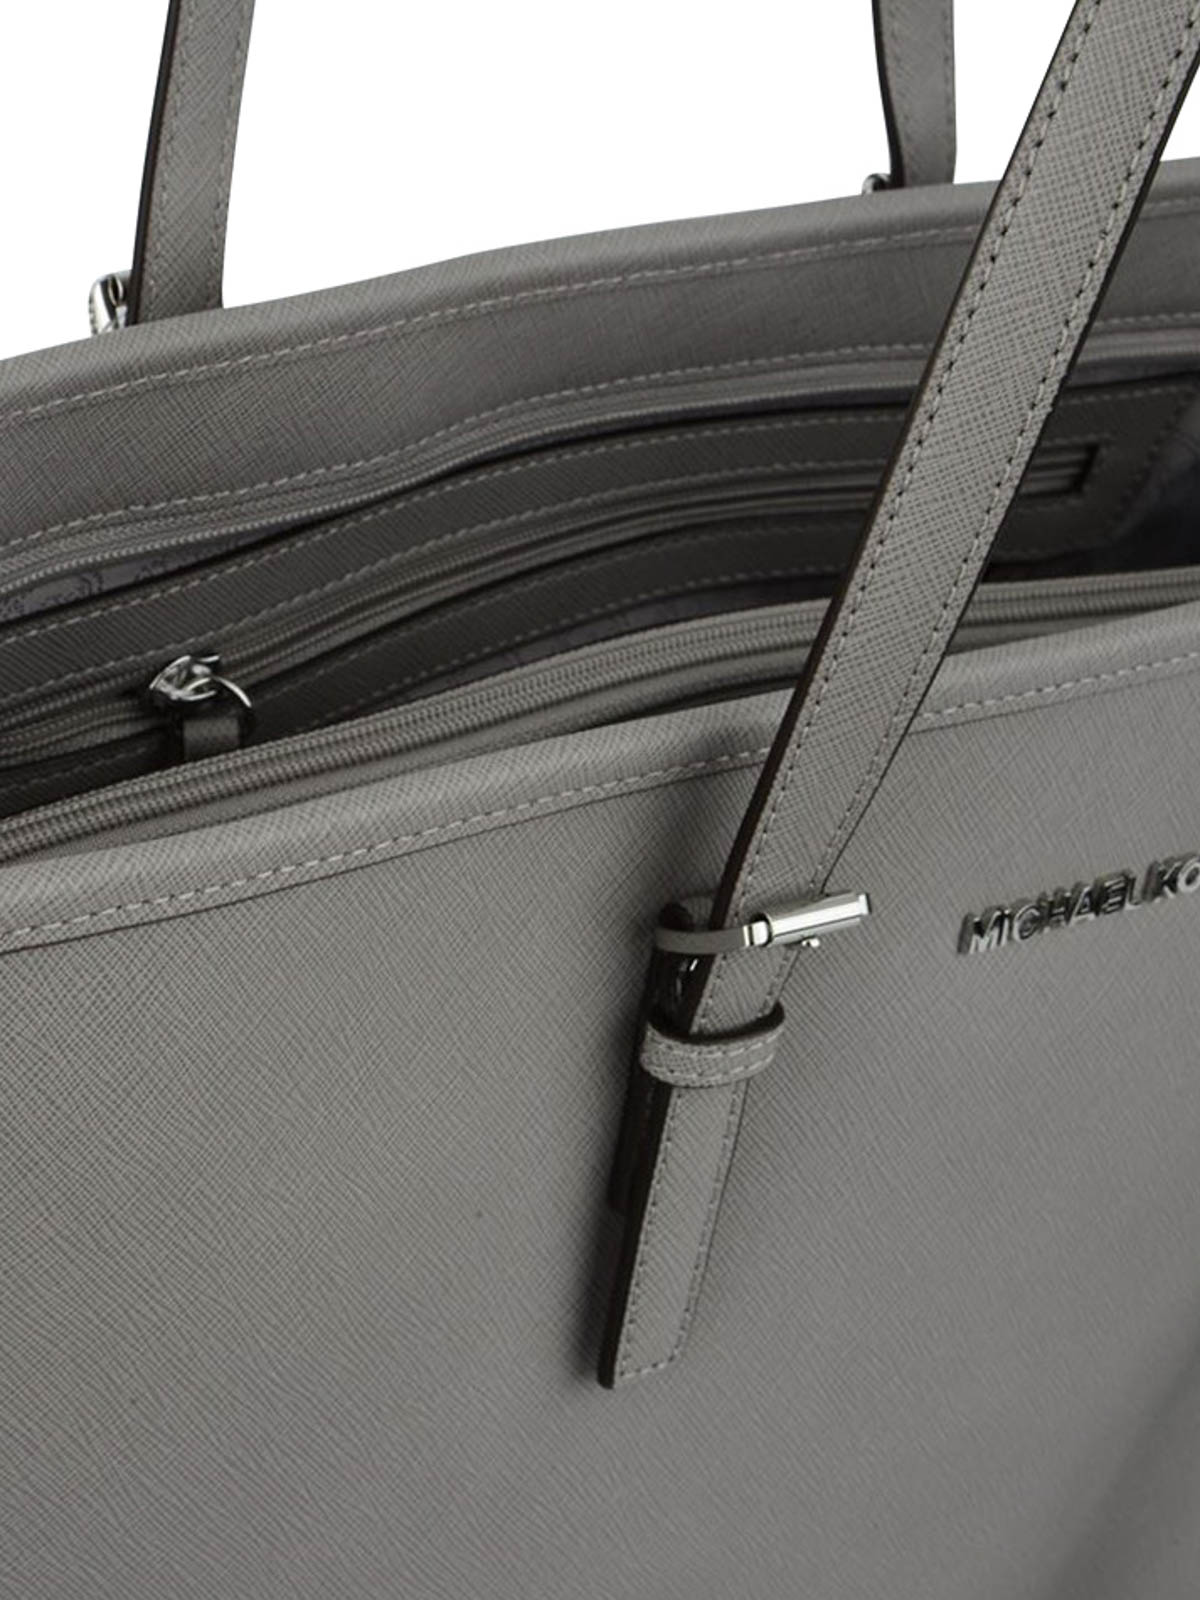 Michael Kors Jet Set Travel Large Tote Bag (Black)